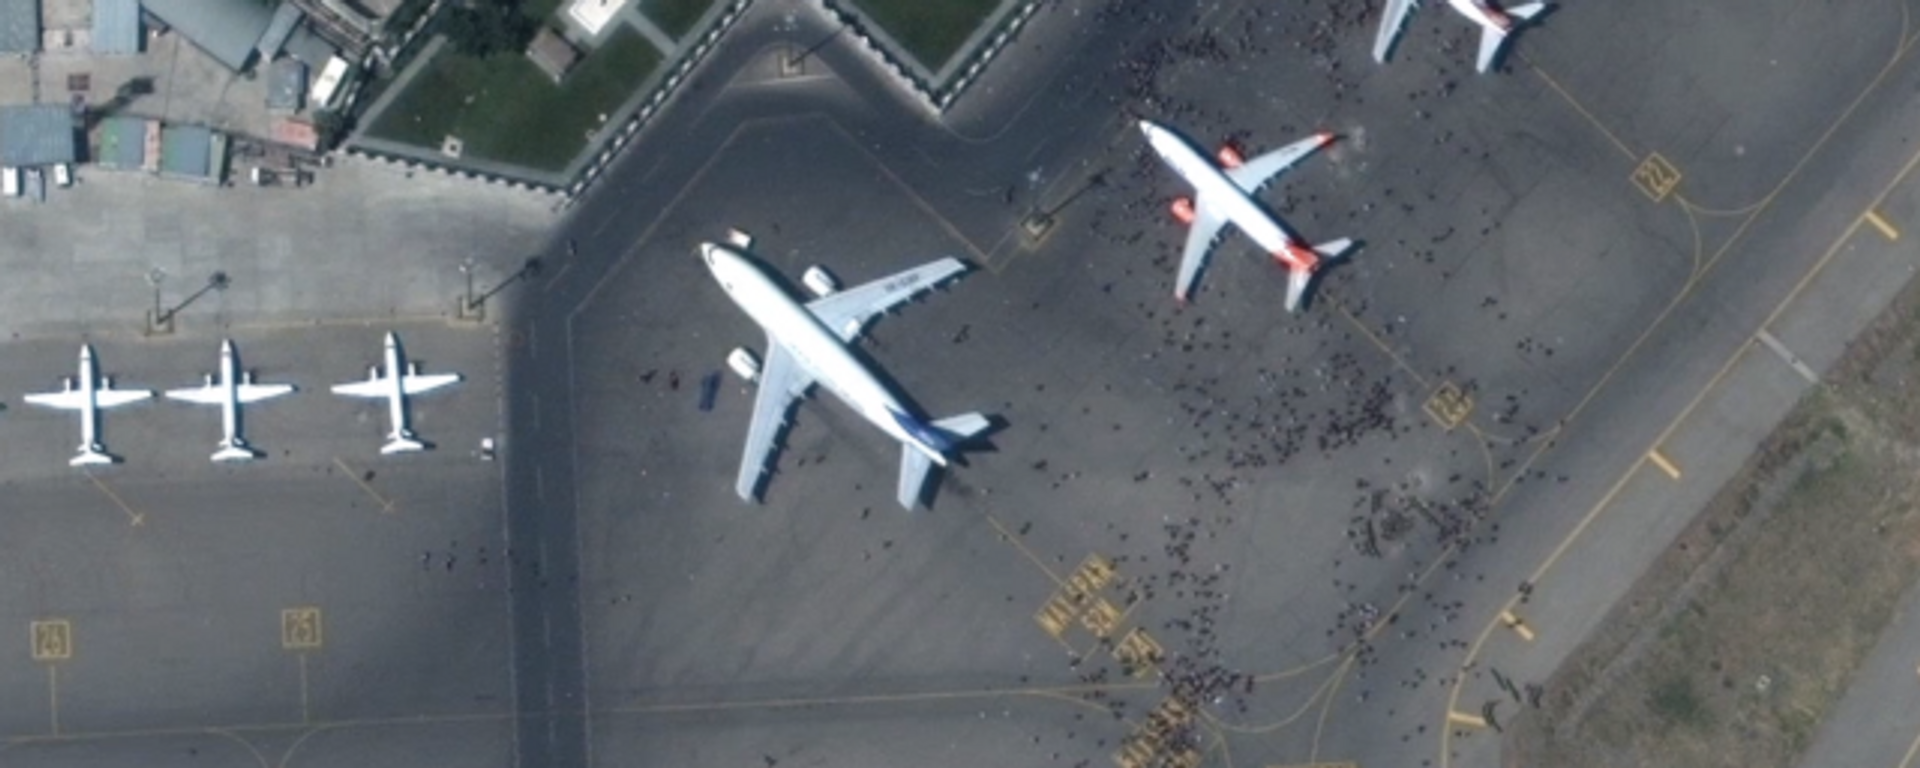 Las imágenes por satélite del caos en el aeropuerto de Kabul - Sputnik Mundo, 1920, 17.08.2021